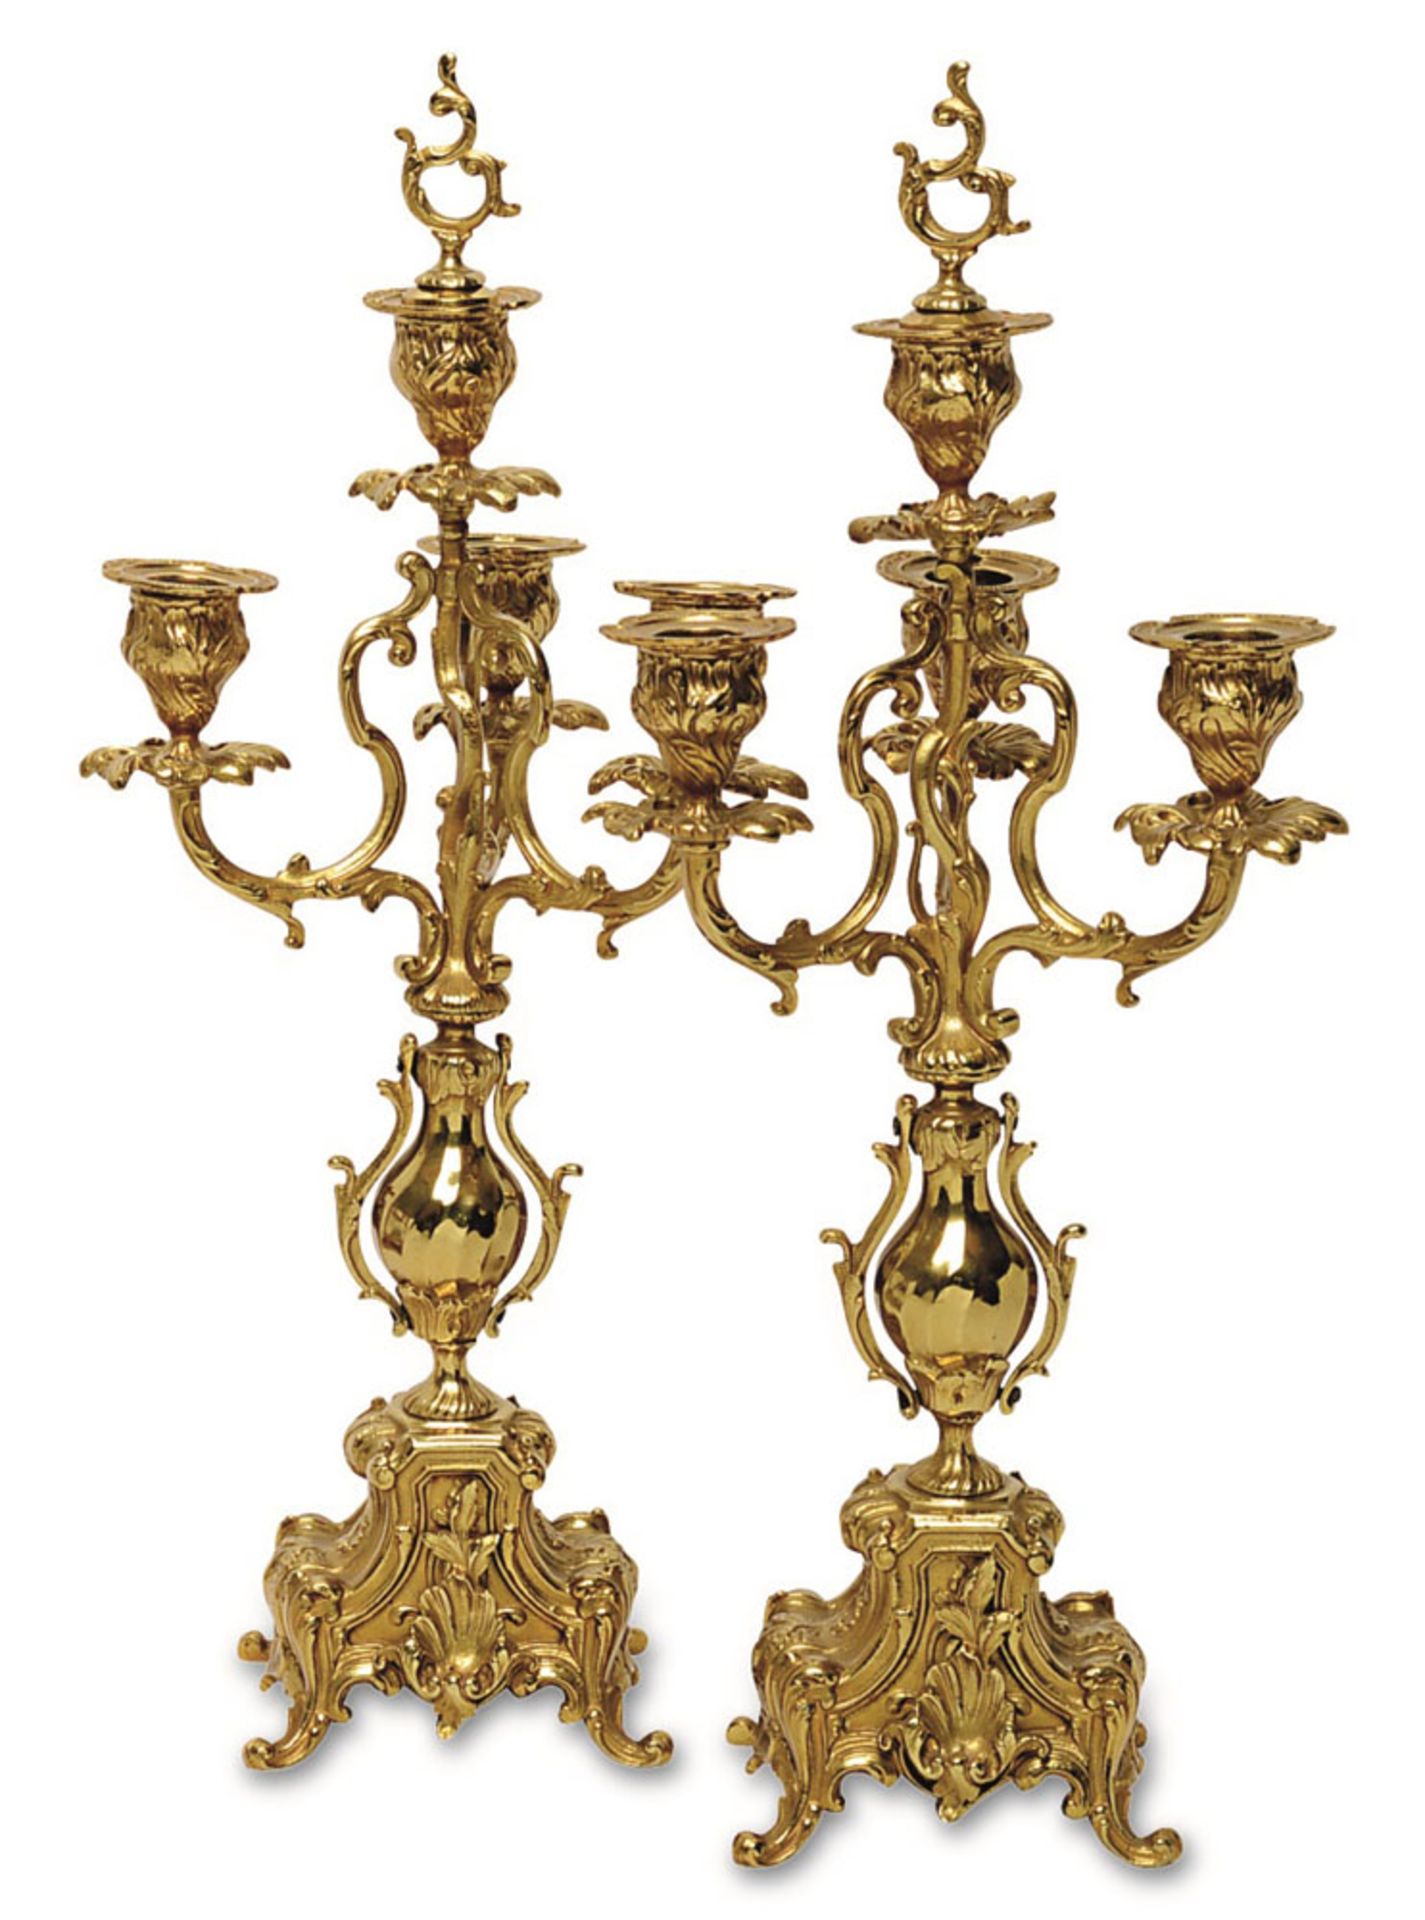 Paar Girandolen Barockstil. Bronze vergoldet. Auf geschweiftem, vierfüßigem Sockel vasenförmiger